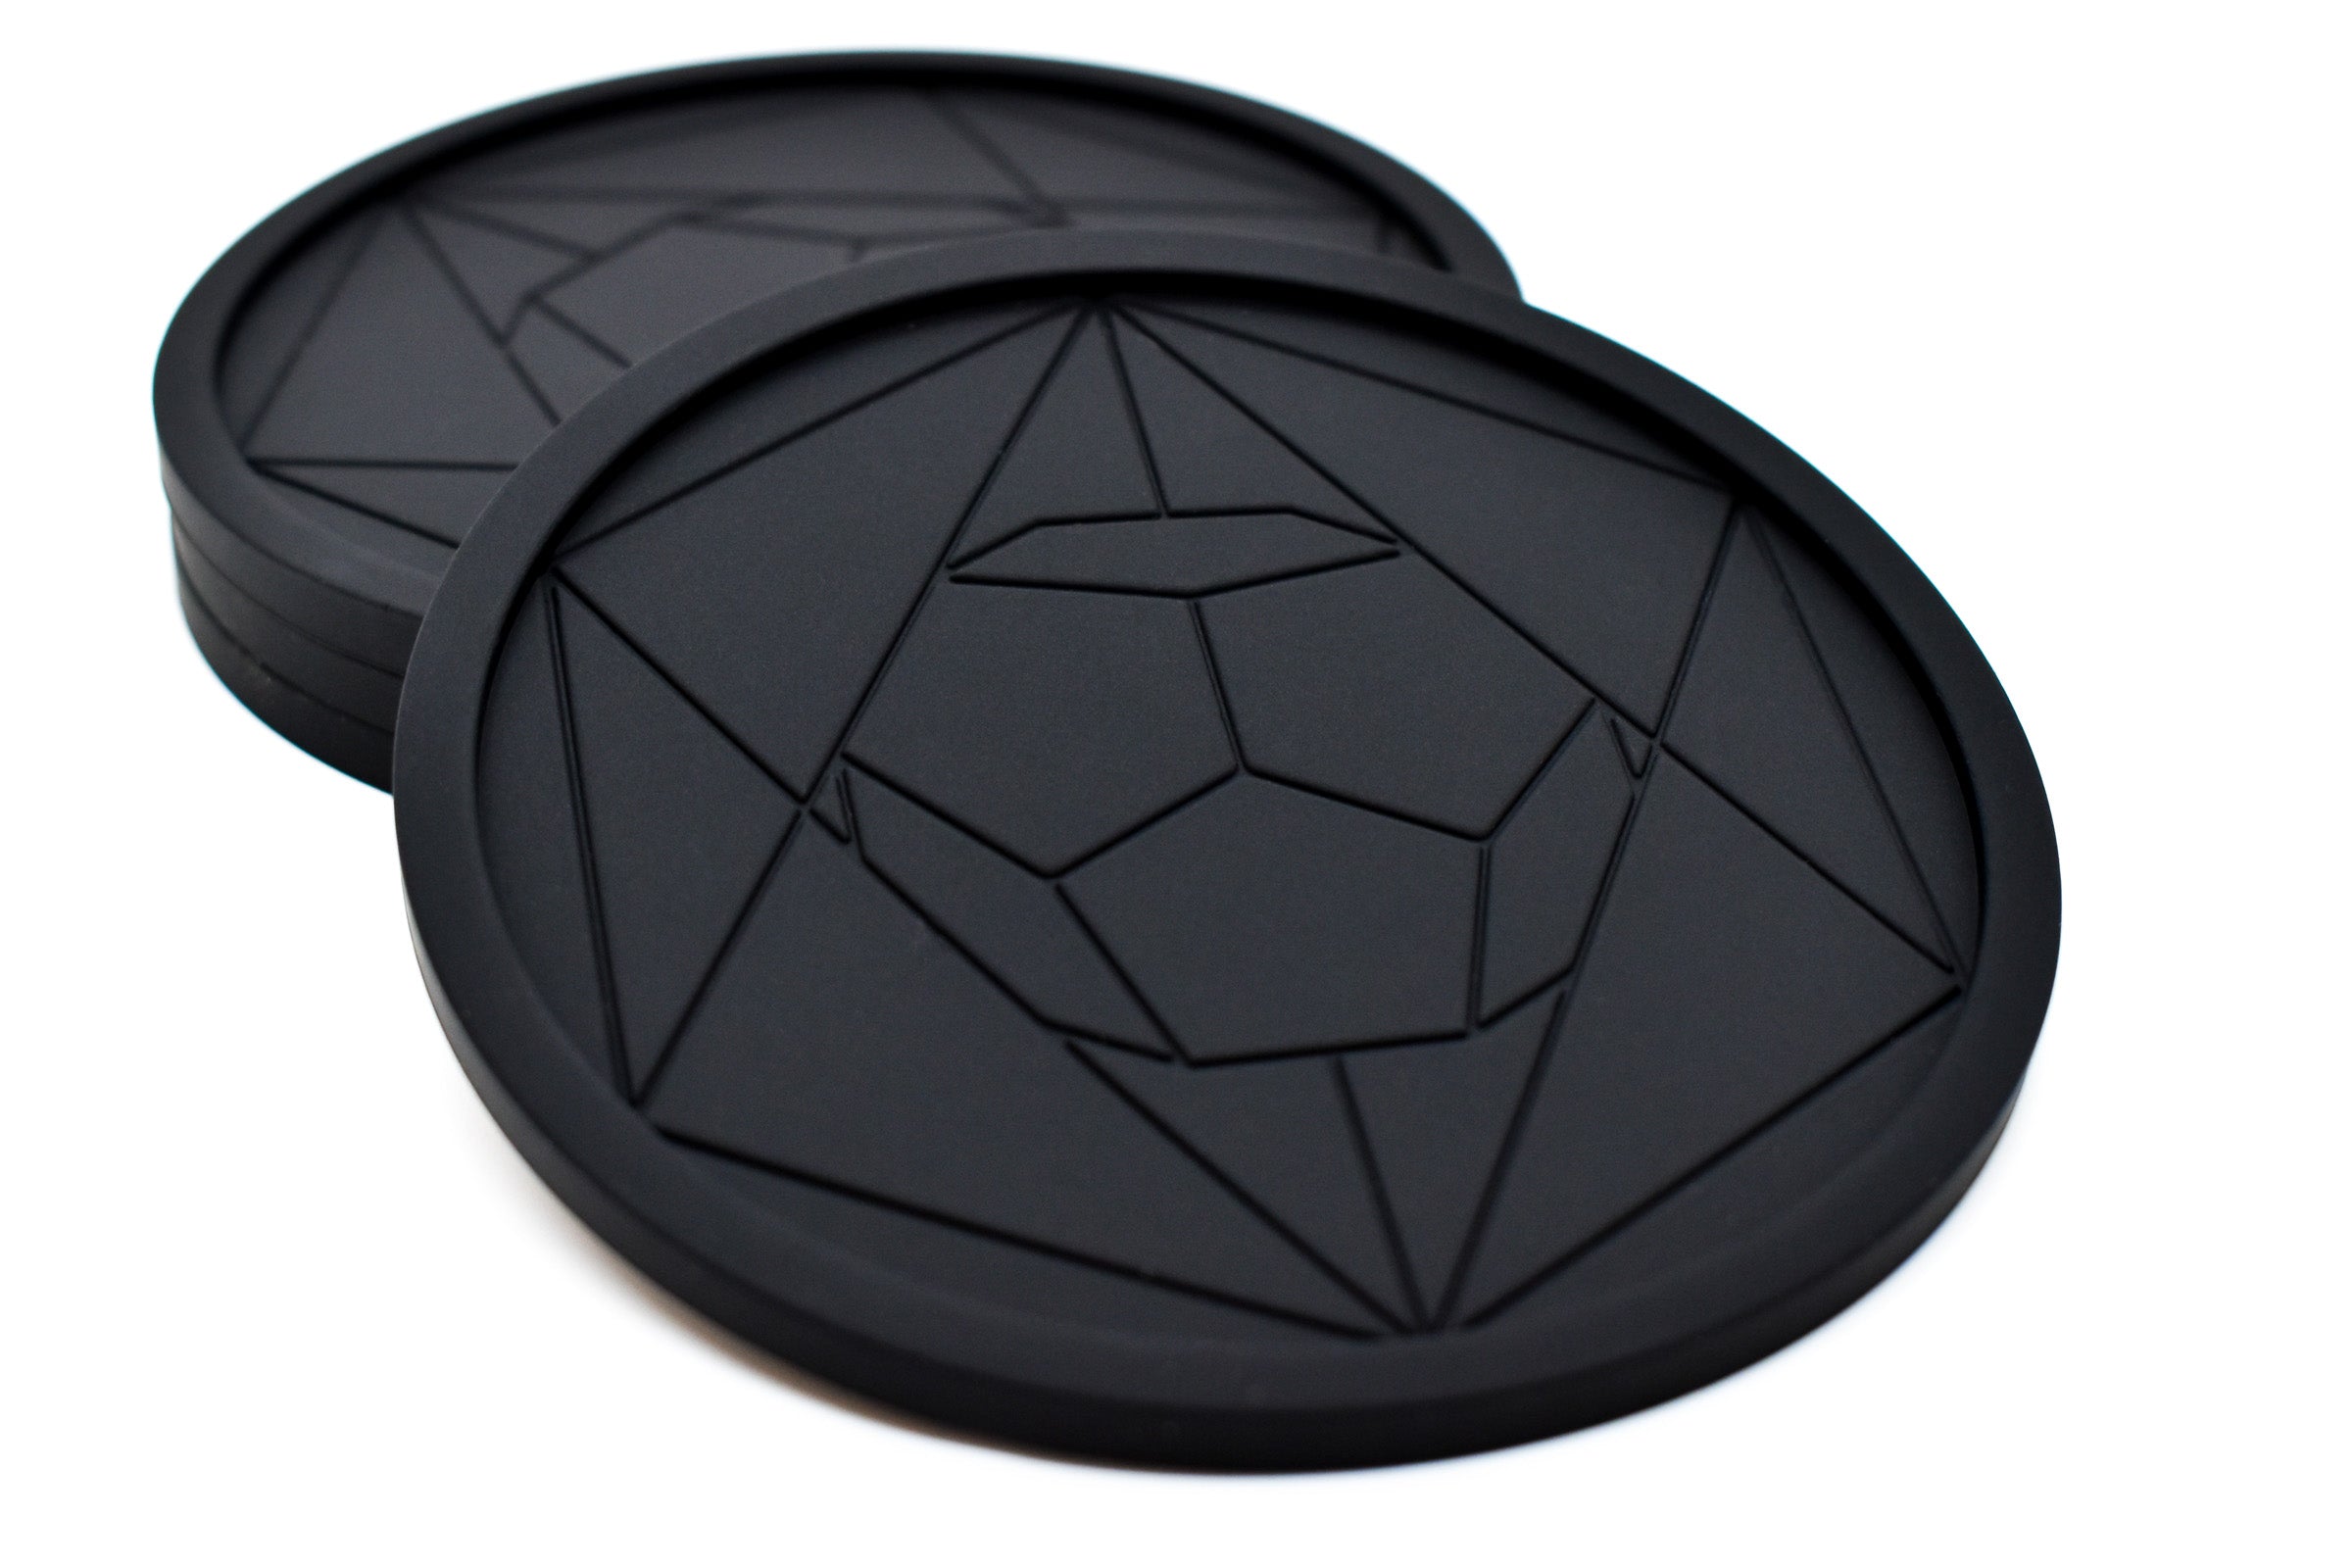 DIAMAS Geometric Black Coasters || Set of 4